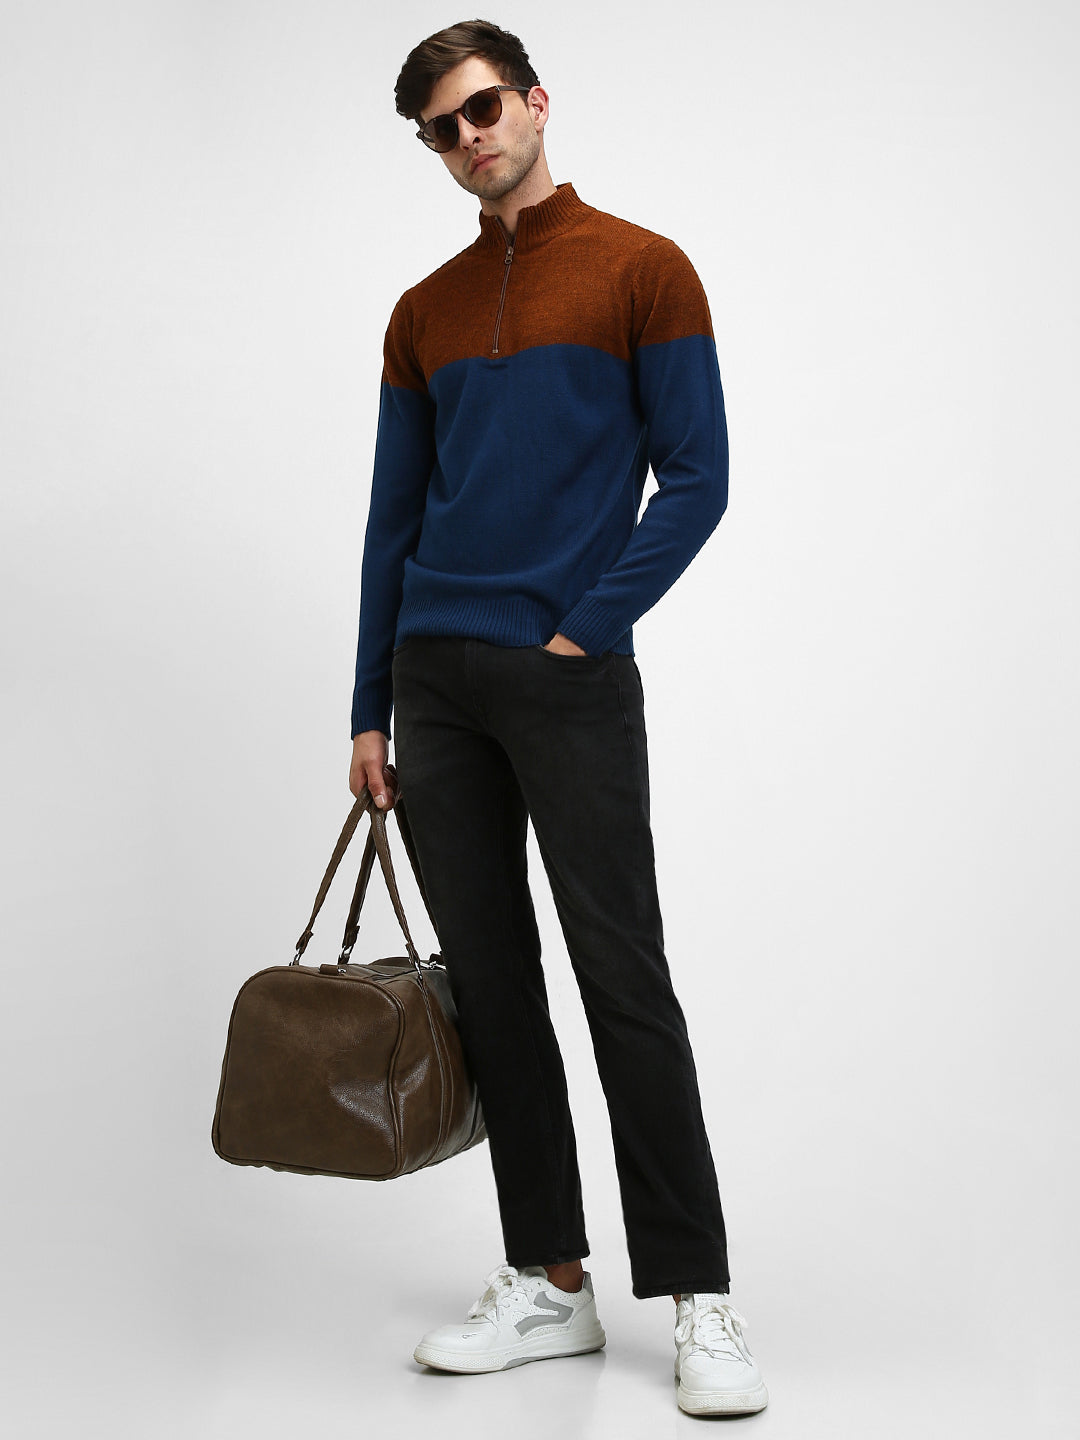 Dennis Lingo Men's Rust Colourblock Mock Full Sleeves Half Zip Sweater